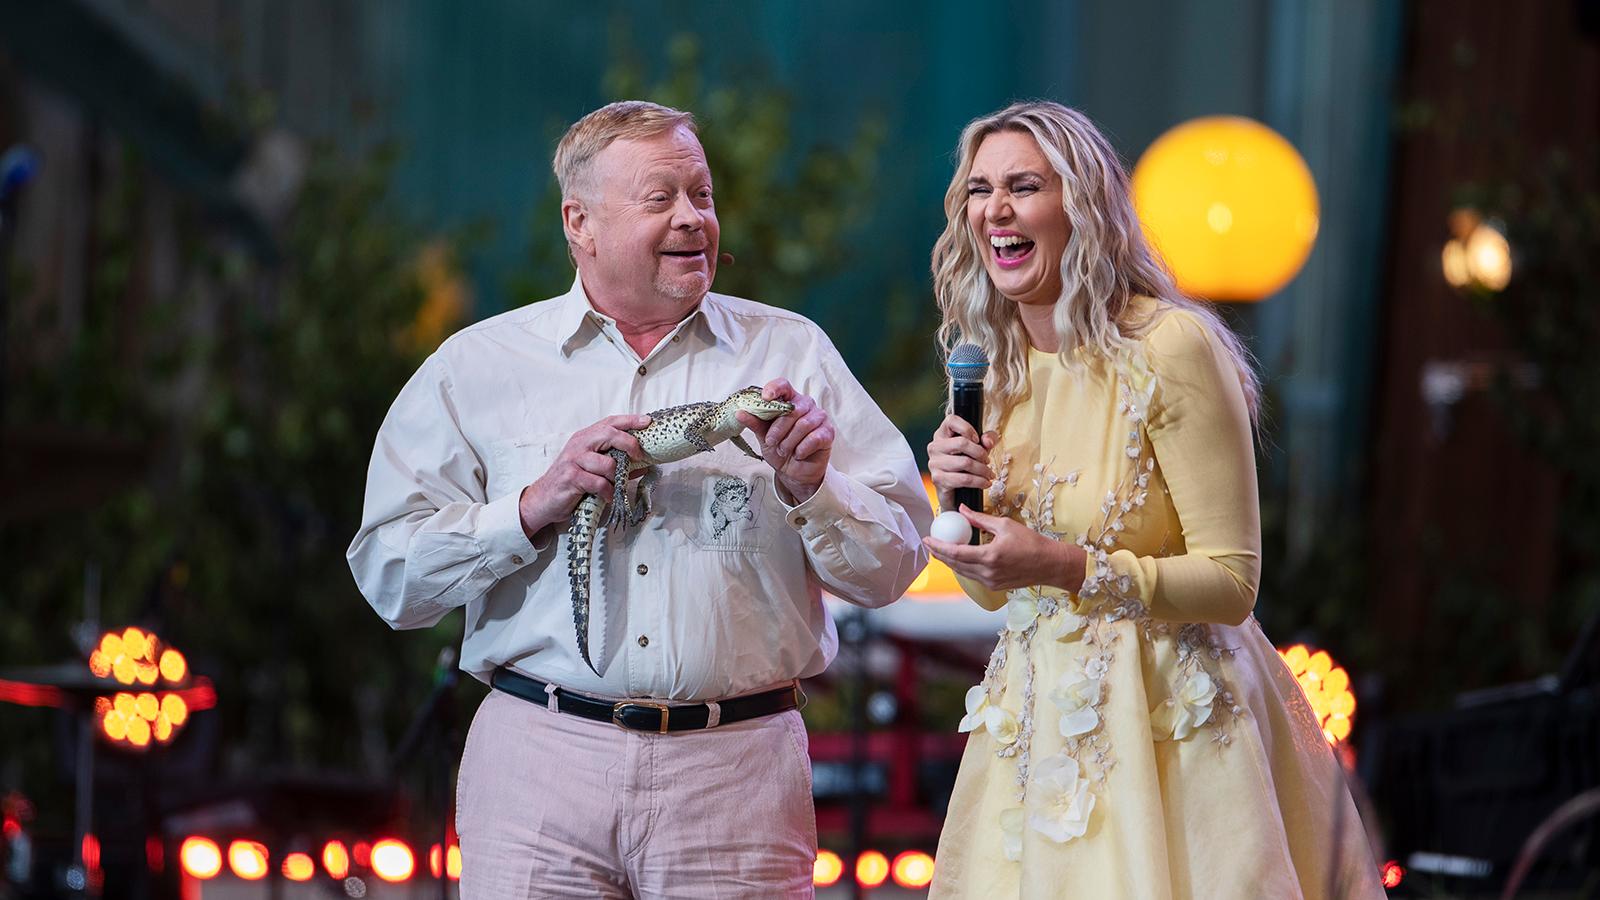 Jonas Wahlström och Sanna Nielsen under Allsång på Skansen den 2 juli 2019.